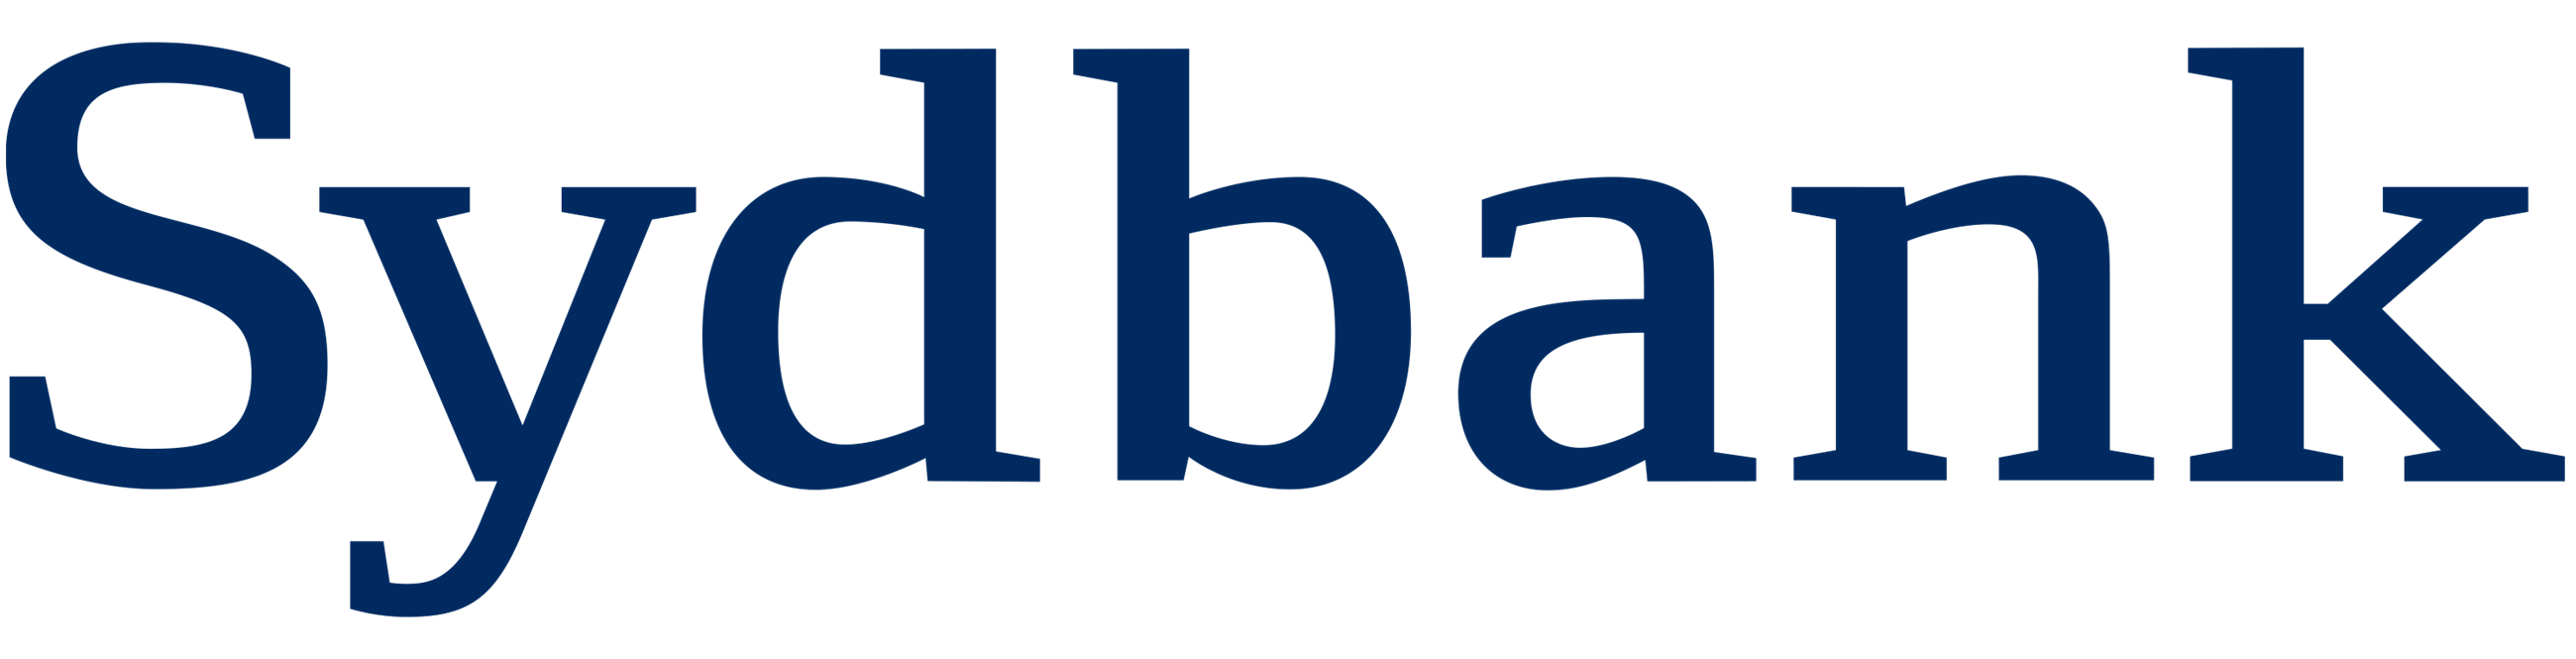 digital-sb-logo-rgb